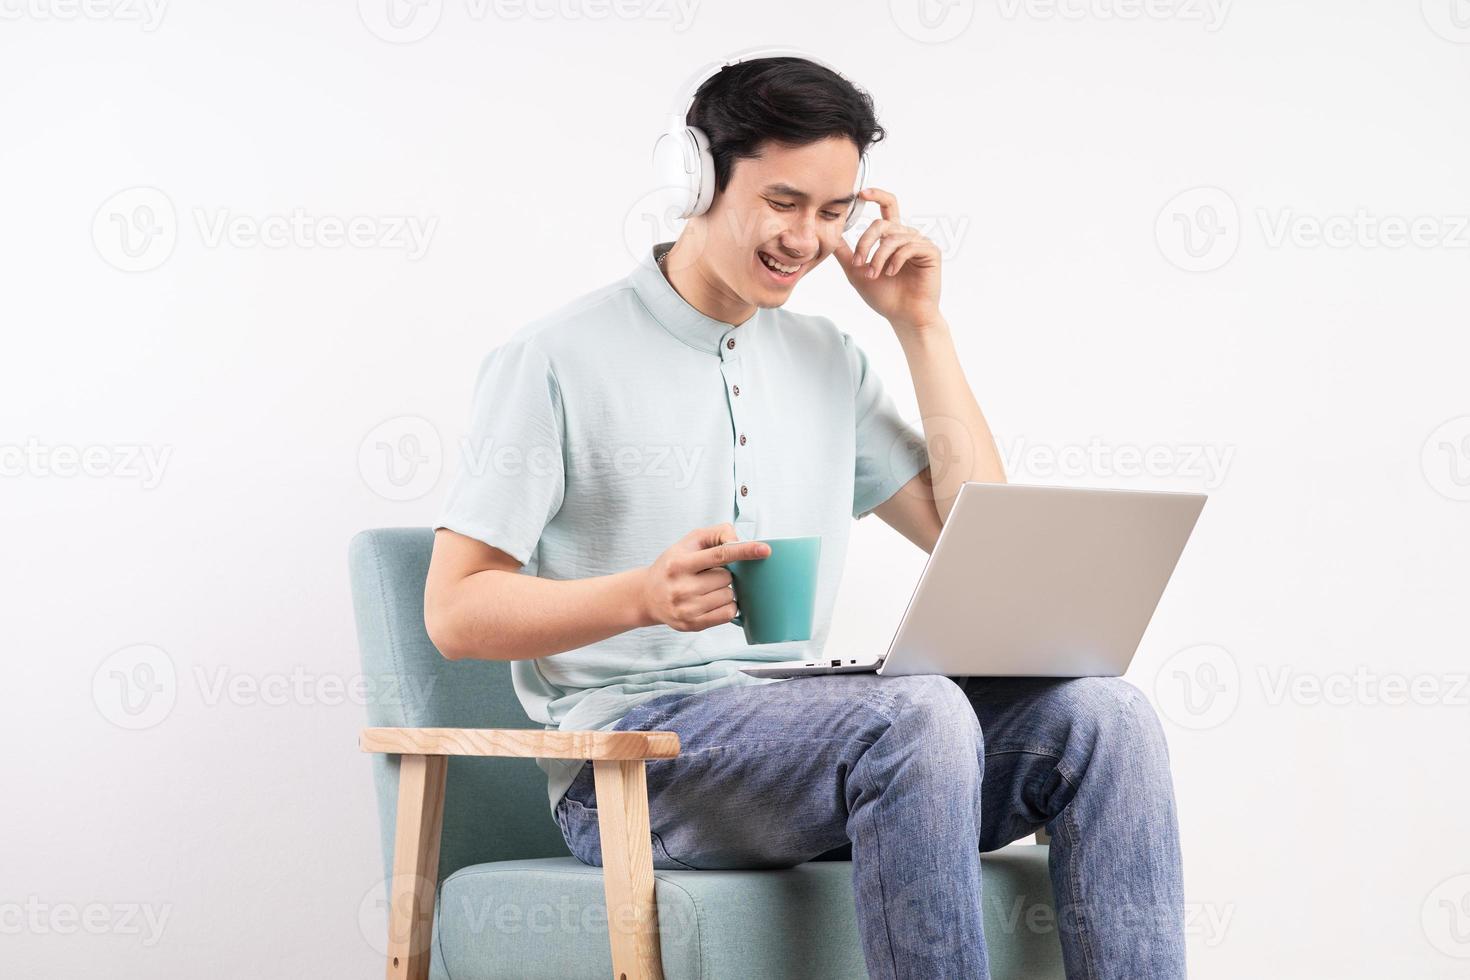 jeune homme assis sur le canapé écoutant de la musique et regardant l'écran de l'ordinateur avec une expression heureuse photo